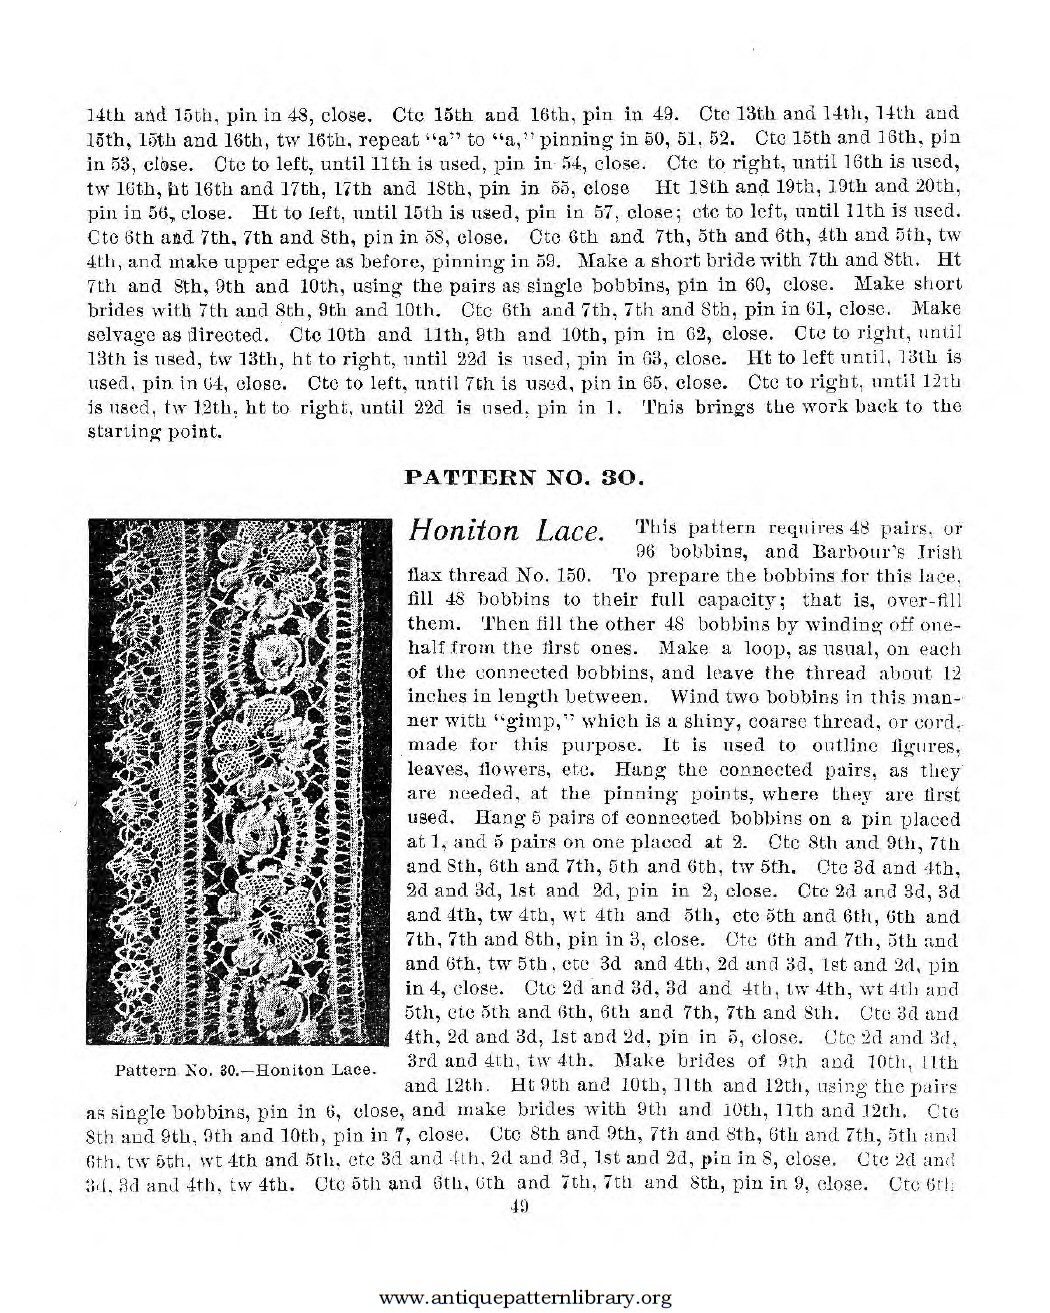 6-DA027 American Lace Maker (Illustrated) Vol. 1 and Vol. 2.